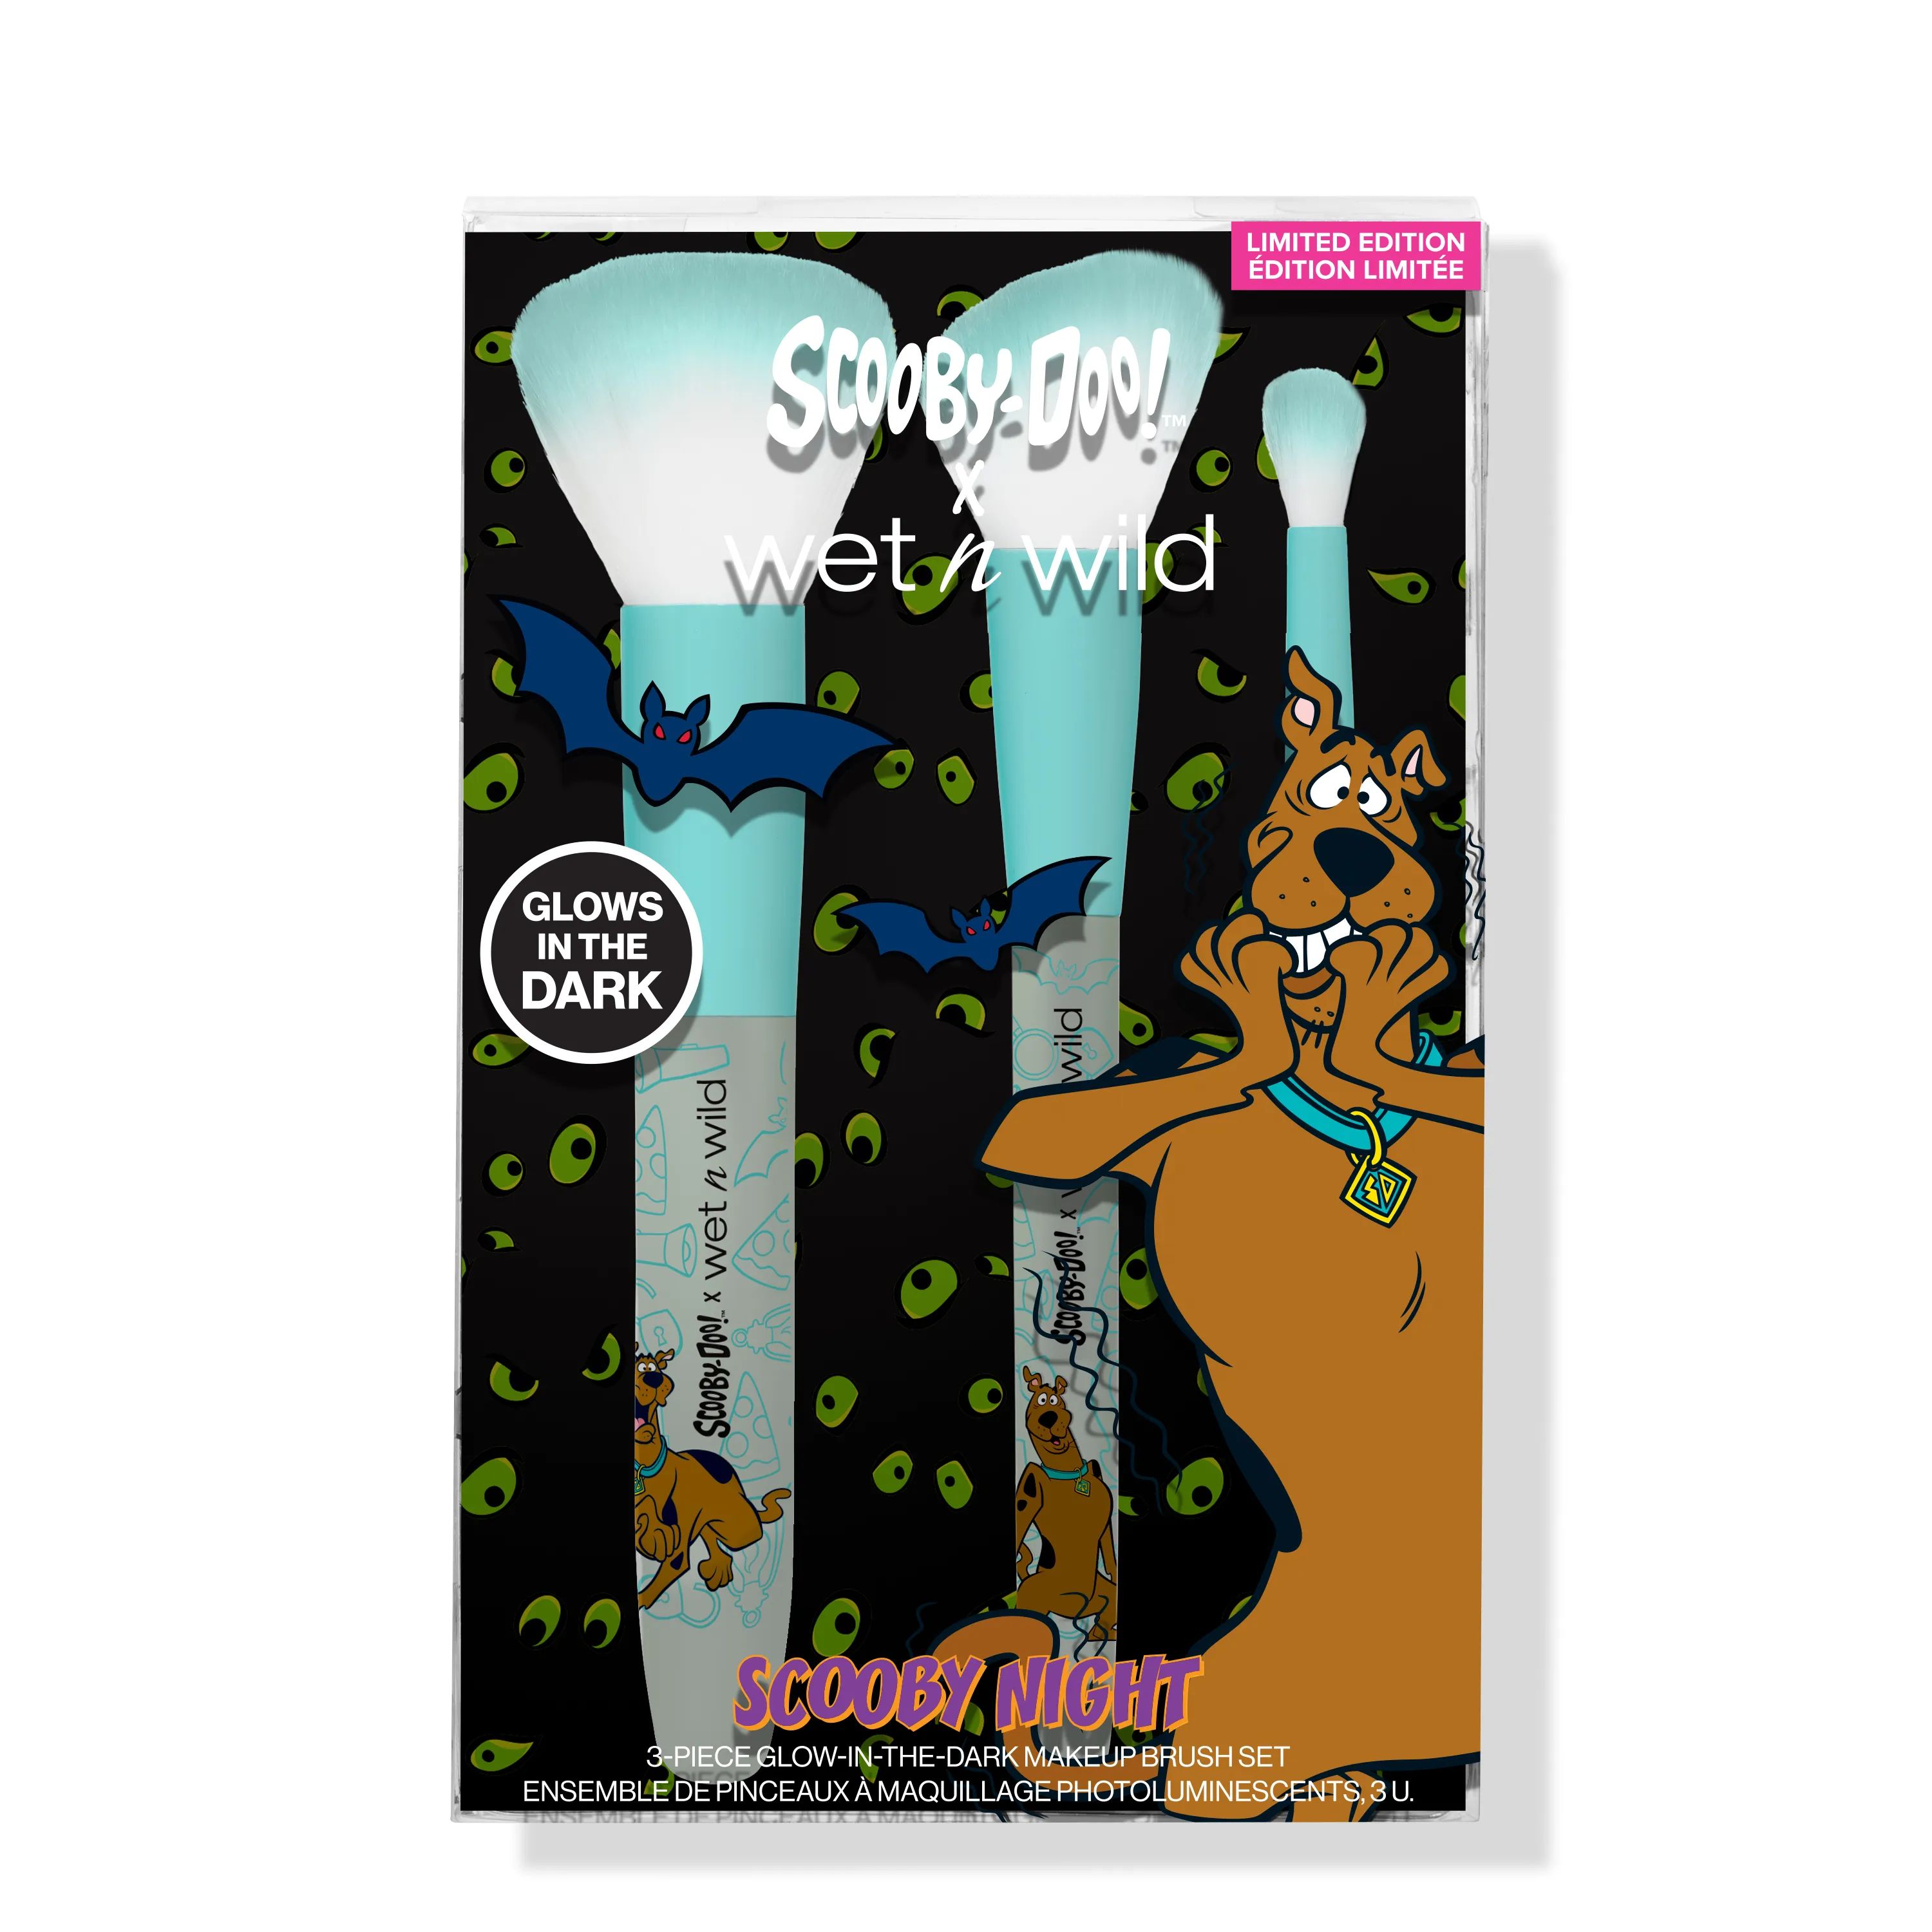 Scooby Night 3-Piece Glow-in-the-Dark Makeup Brush Set | wet n wild Beauty | Wet n Wild (US)